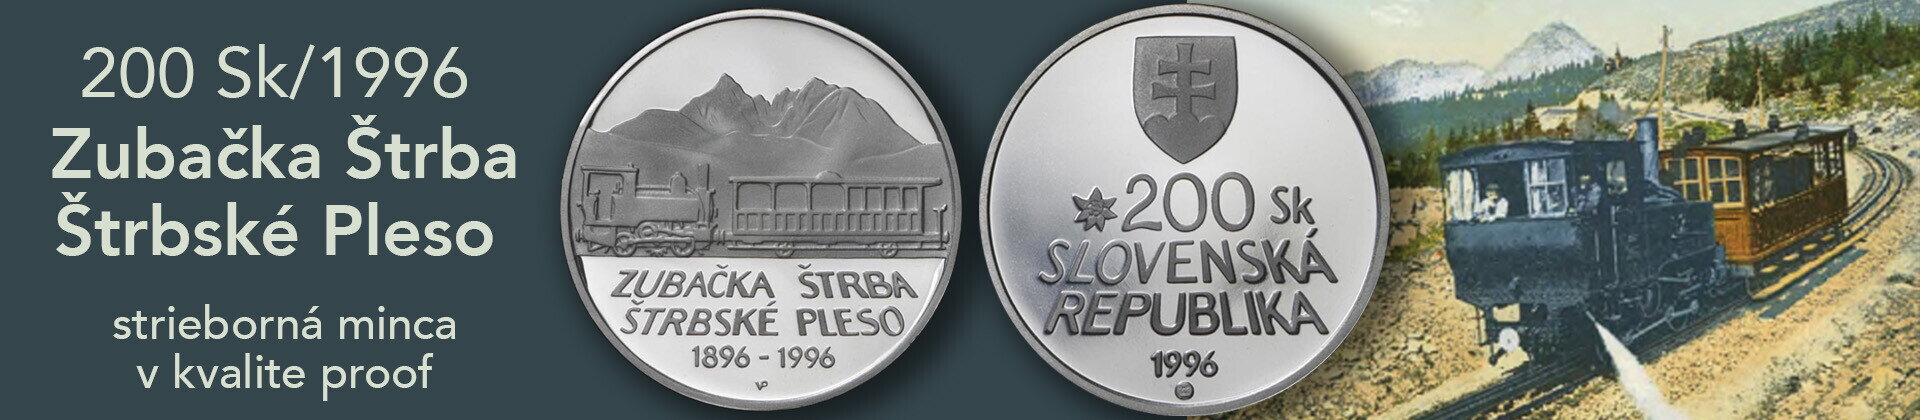 200 Sk/1996 - Zubačka Štrba-Štrbské Pleso